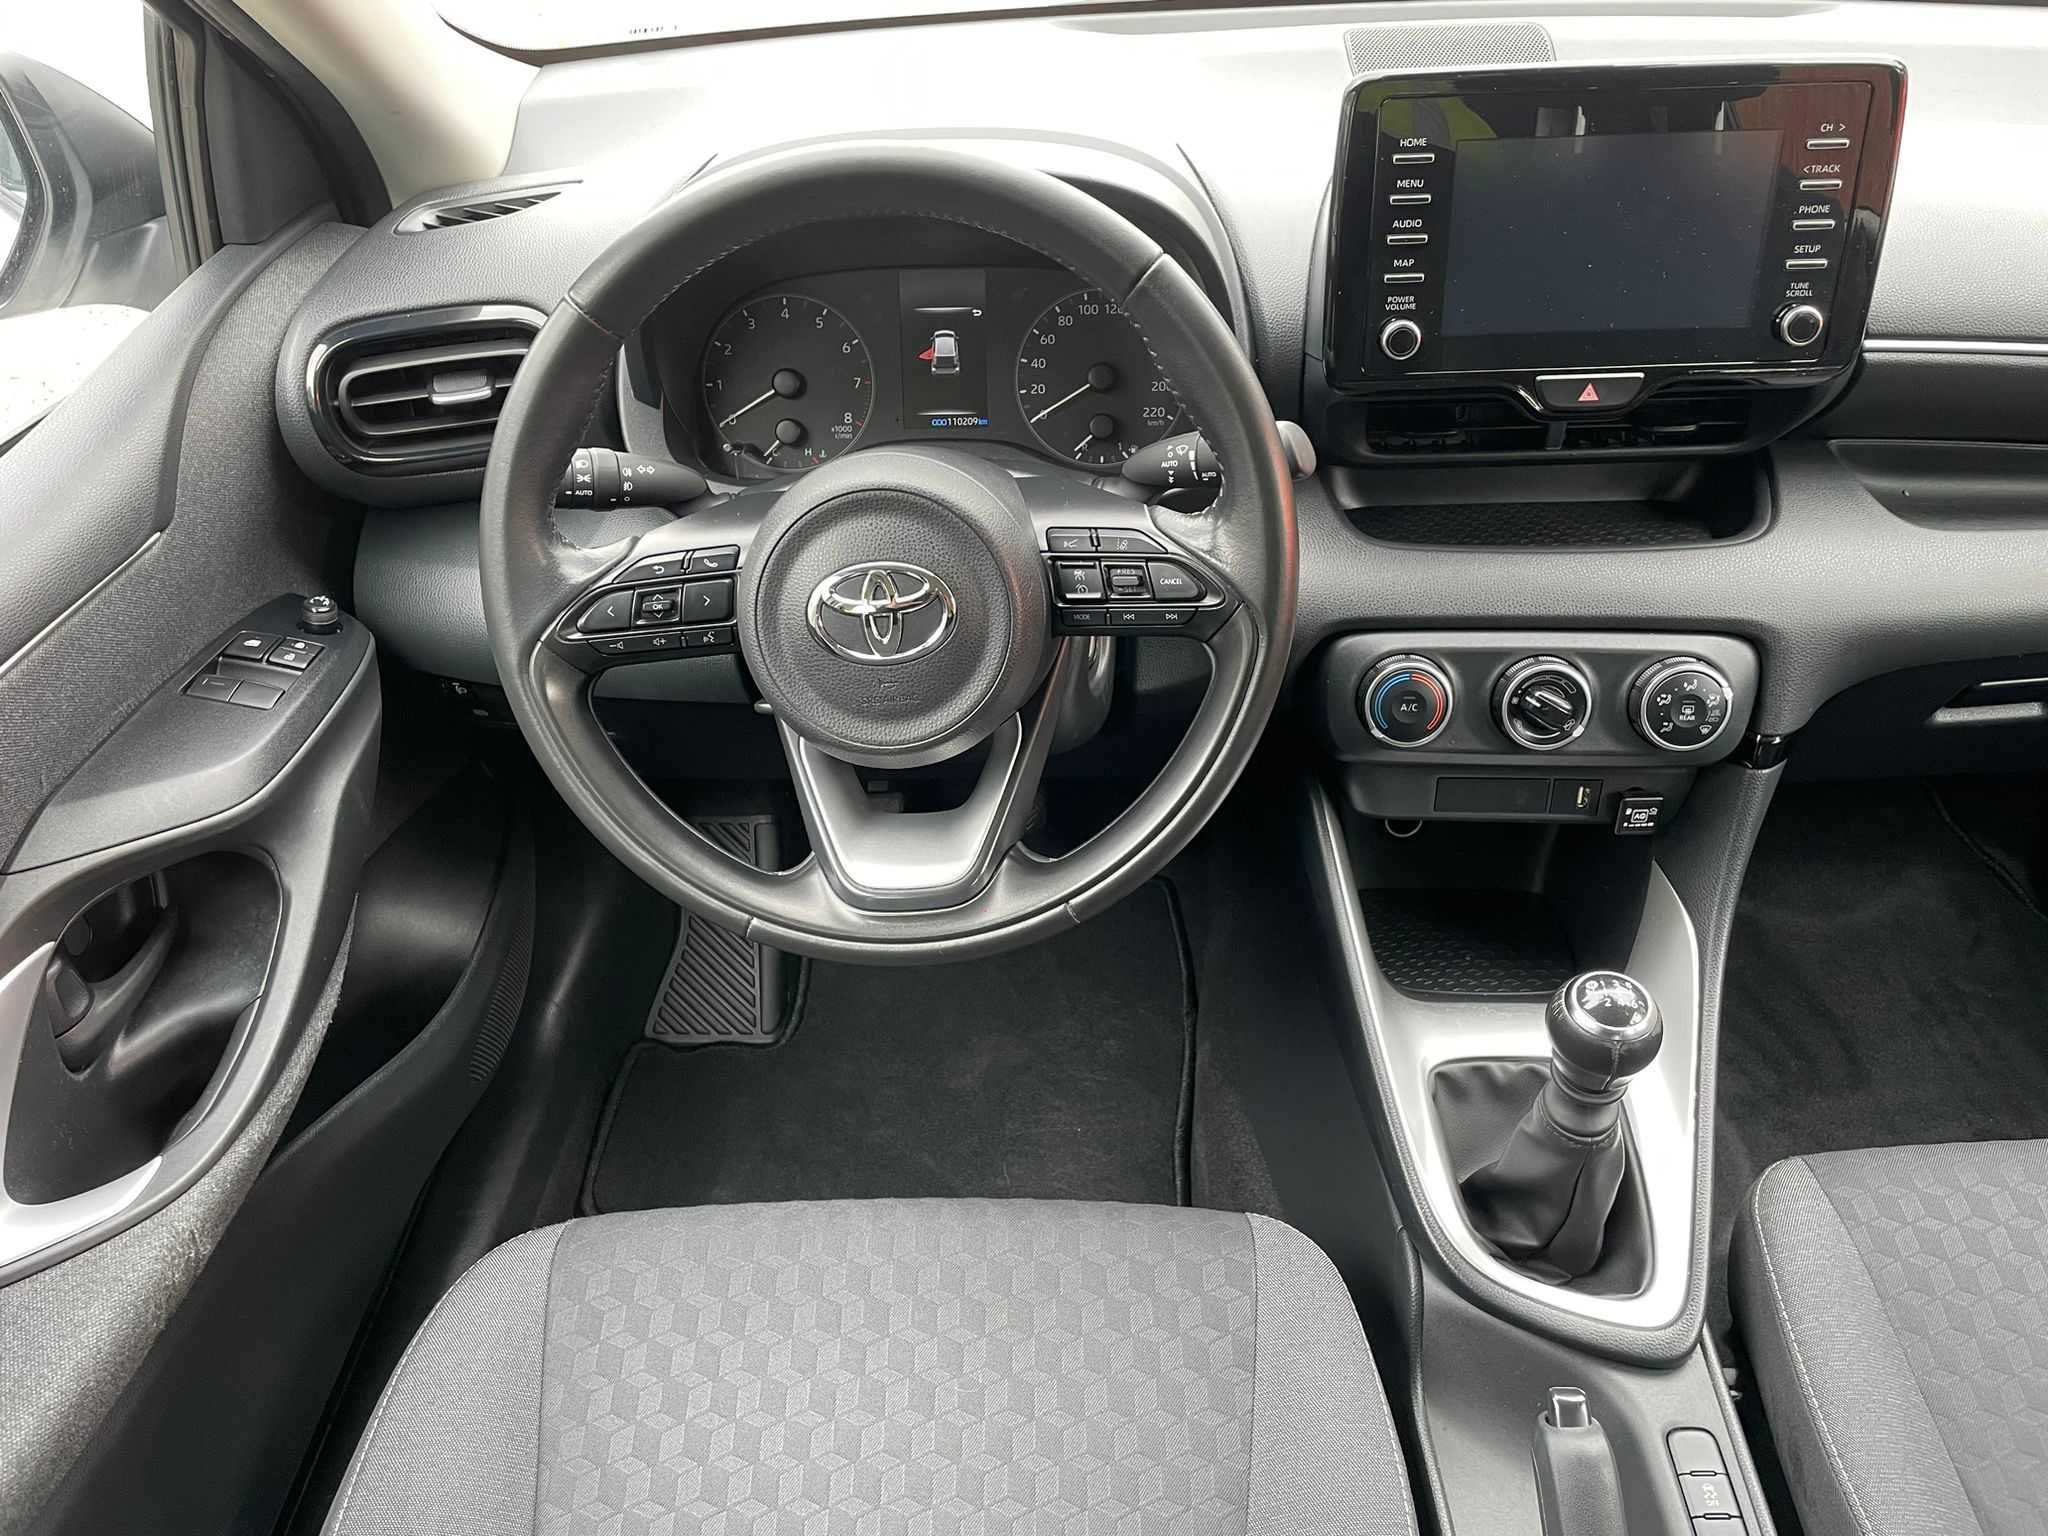 Toyota Yaris 1.5 Benzyna + LPG, nawigacja, kamera cofania